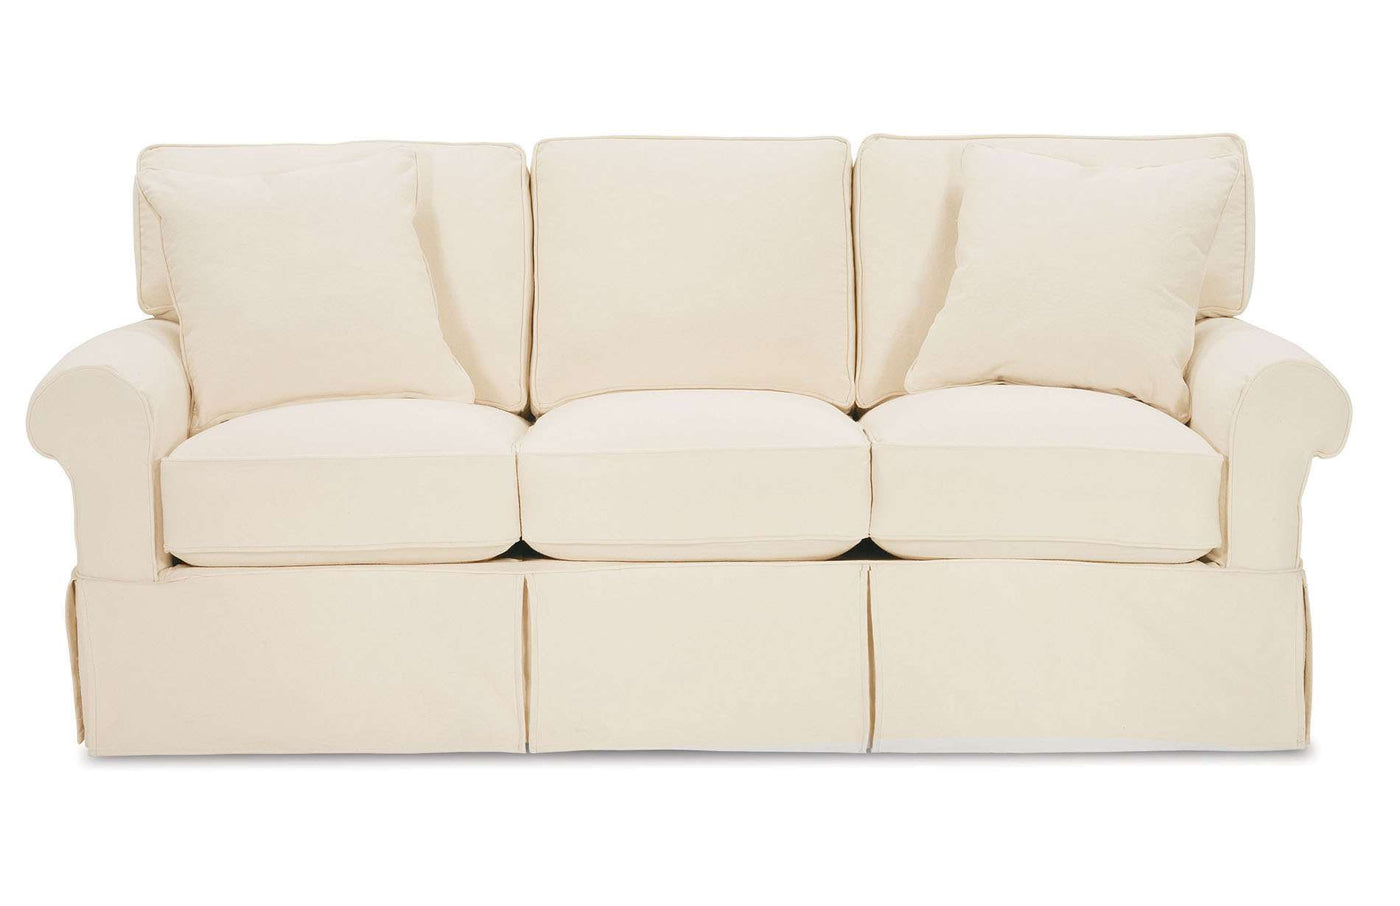 Nantucket 3-Seat Slipcover Queen Sleeper Sofa